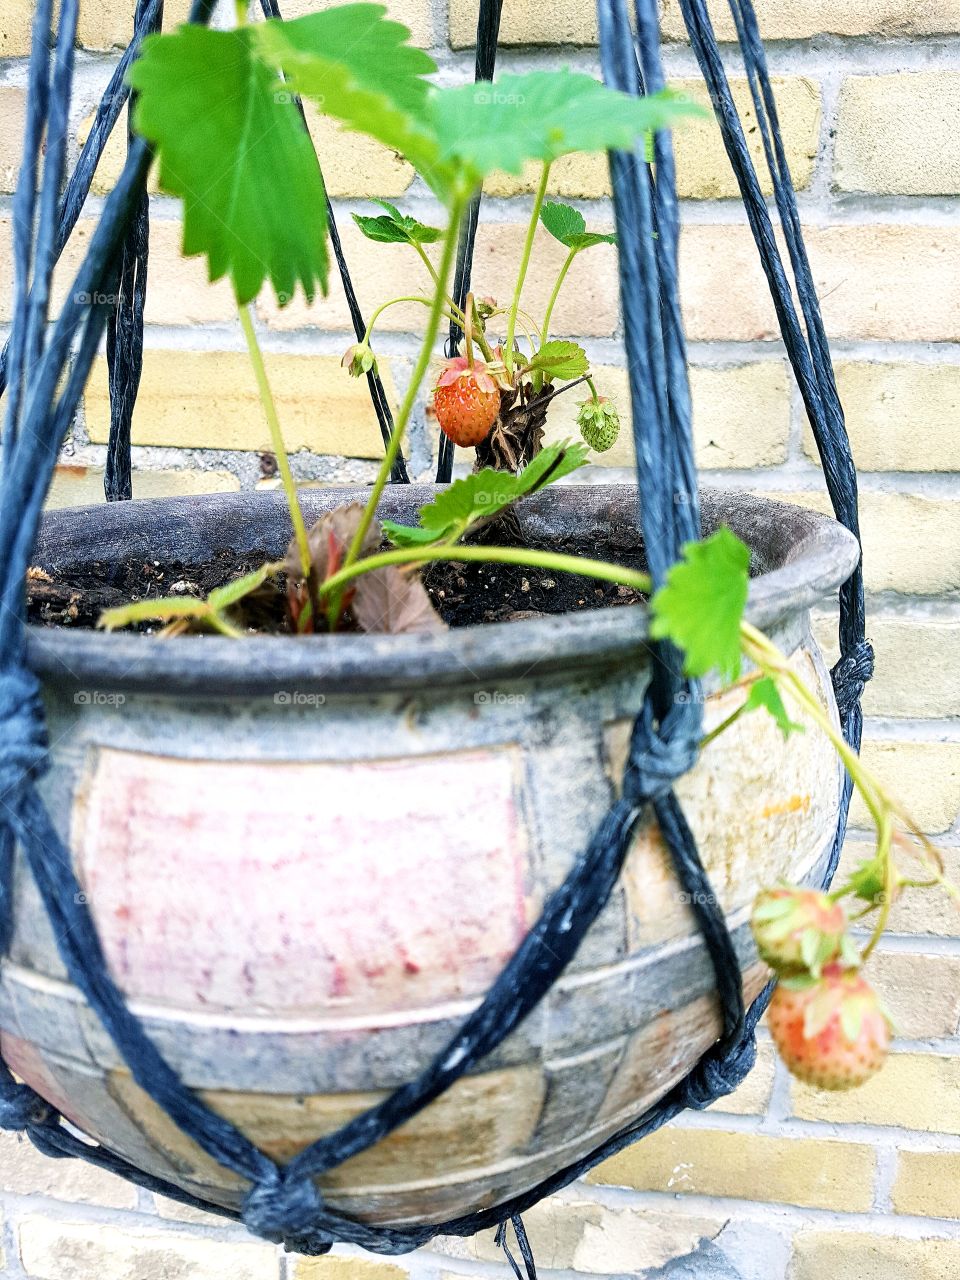 Strawberries growing in a basket.